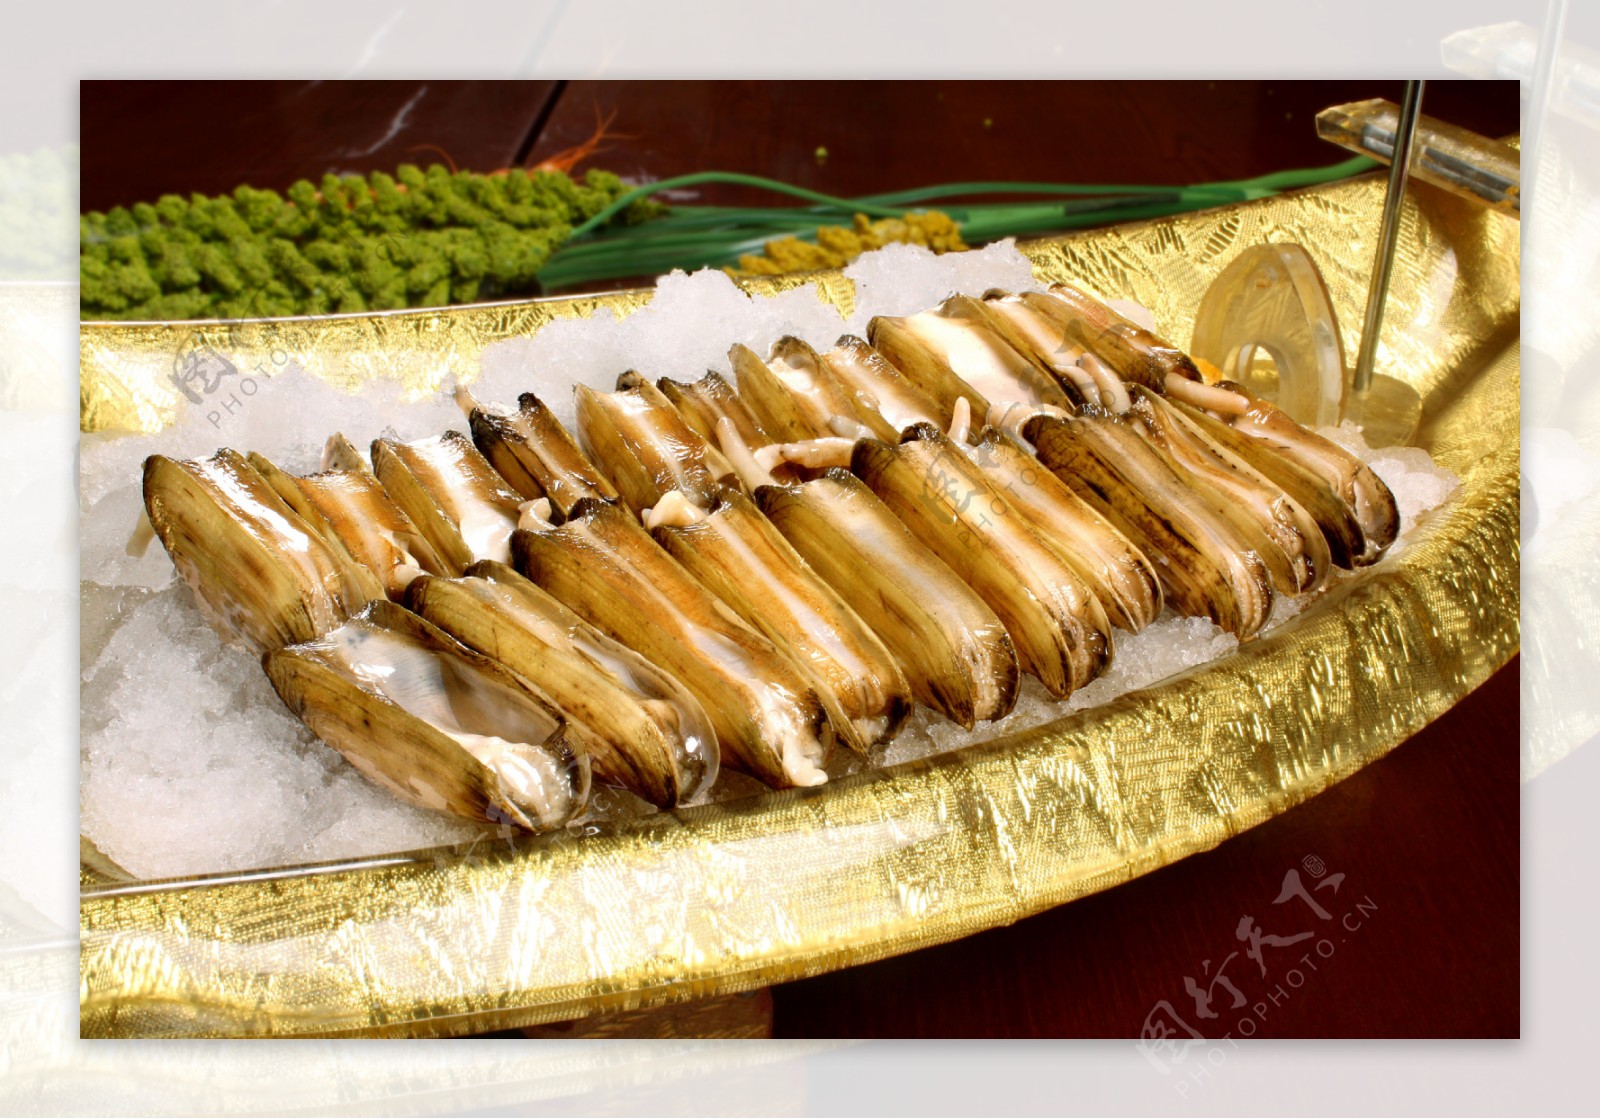 姜葱炒海蛏 - 美食 - 安徽财经网